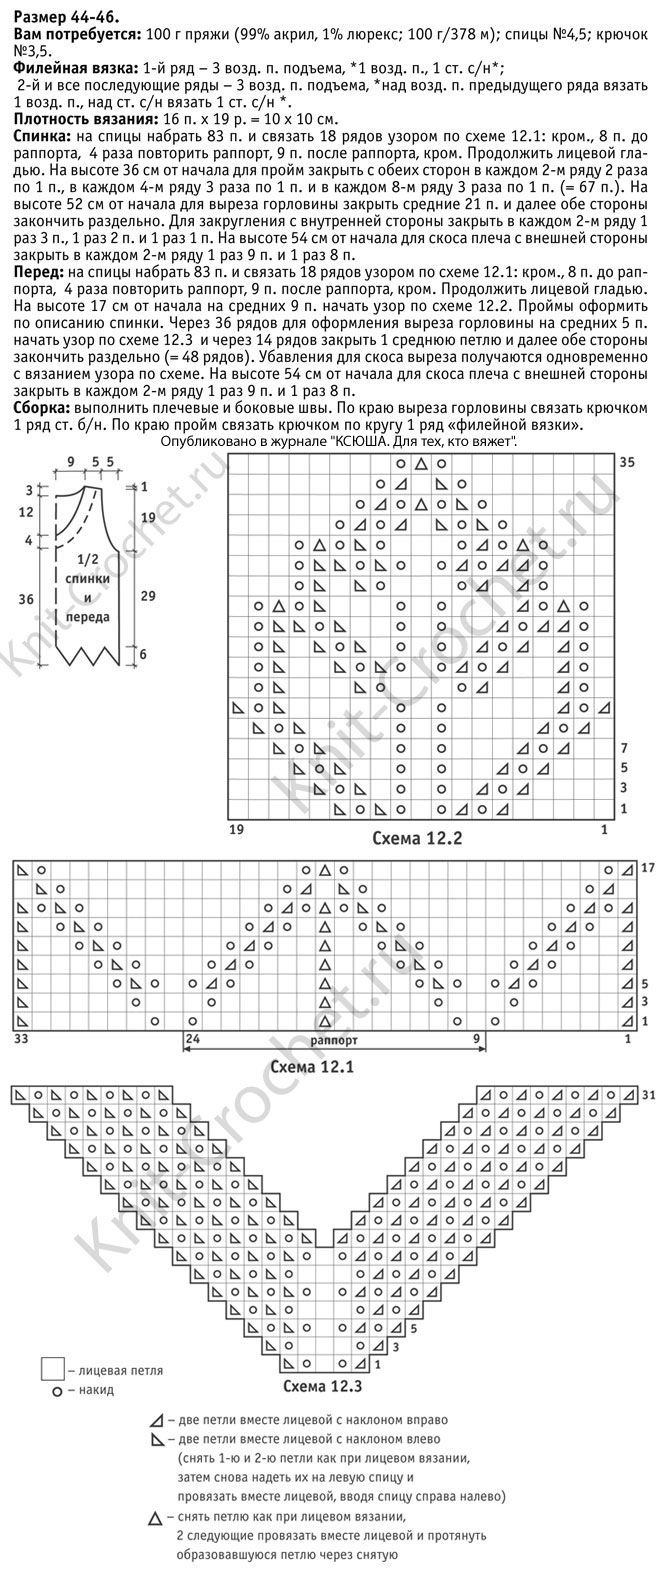 Выкройка, схемы узоров с описанием и инструкции для вязания спицами ажурного топа с цветочным мотивом 44-46 размера .